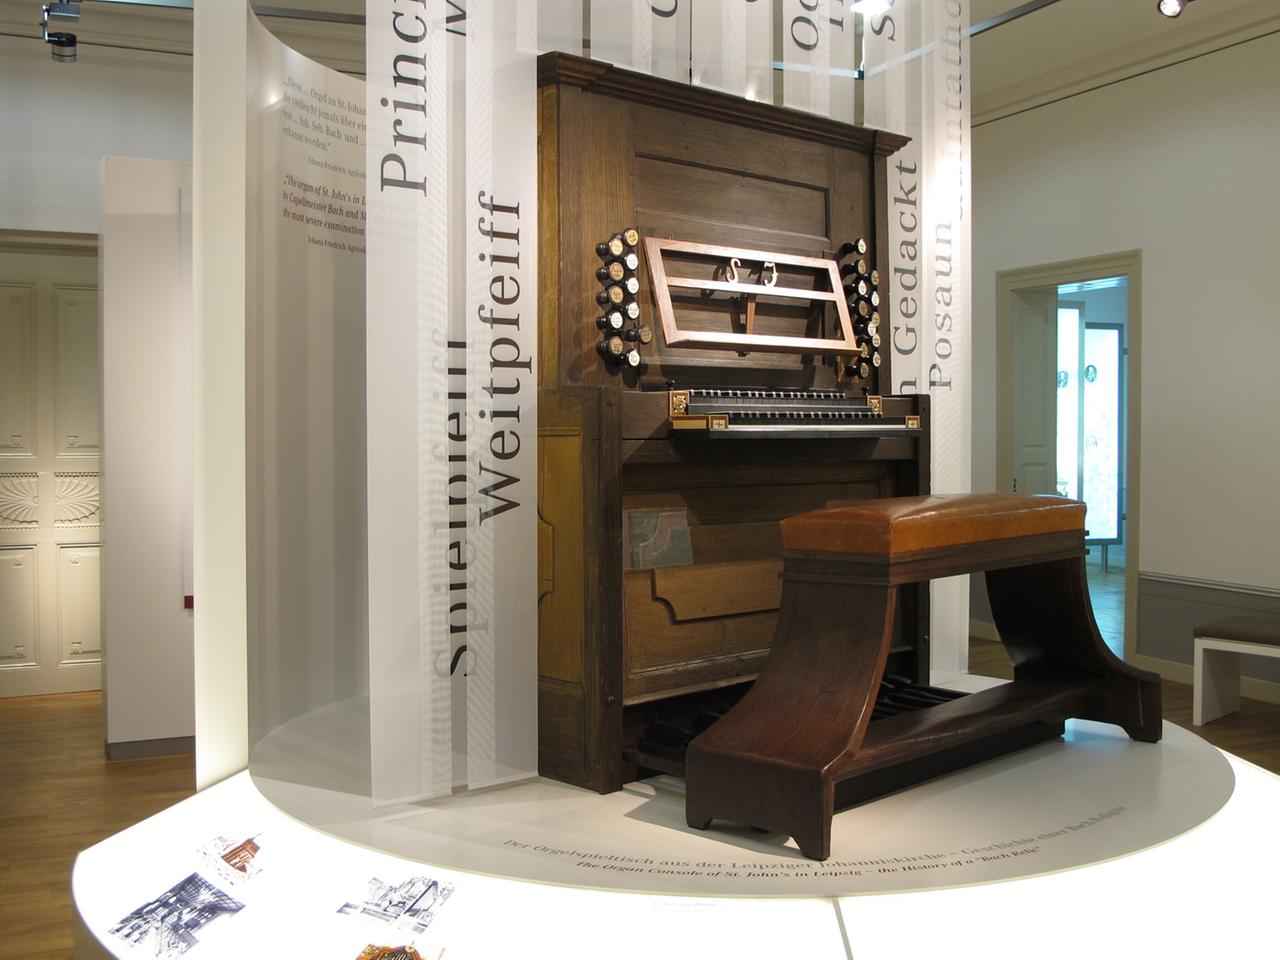 Der Orgelspieltisch aus der Johanniskirche ist eine Leihgabe des Museums für Musikinstrumente der Universität Leipzig.